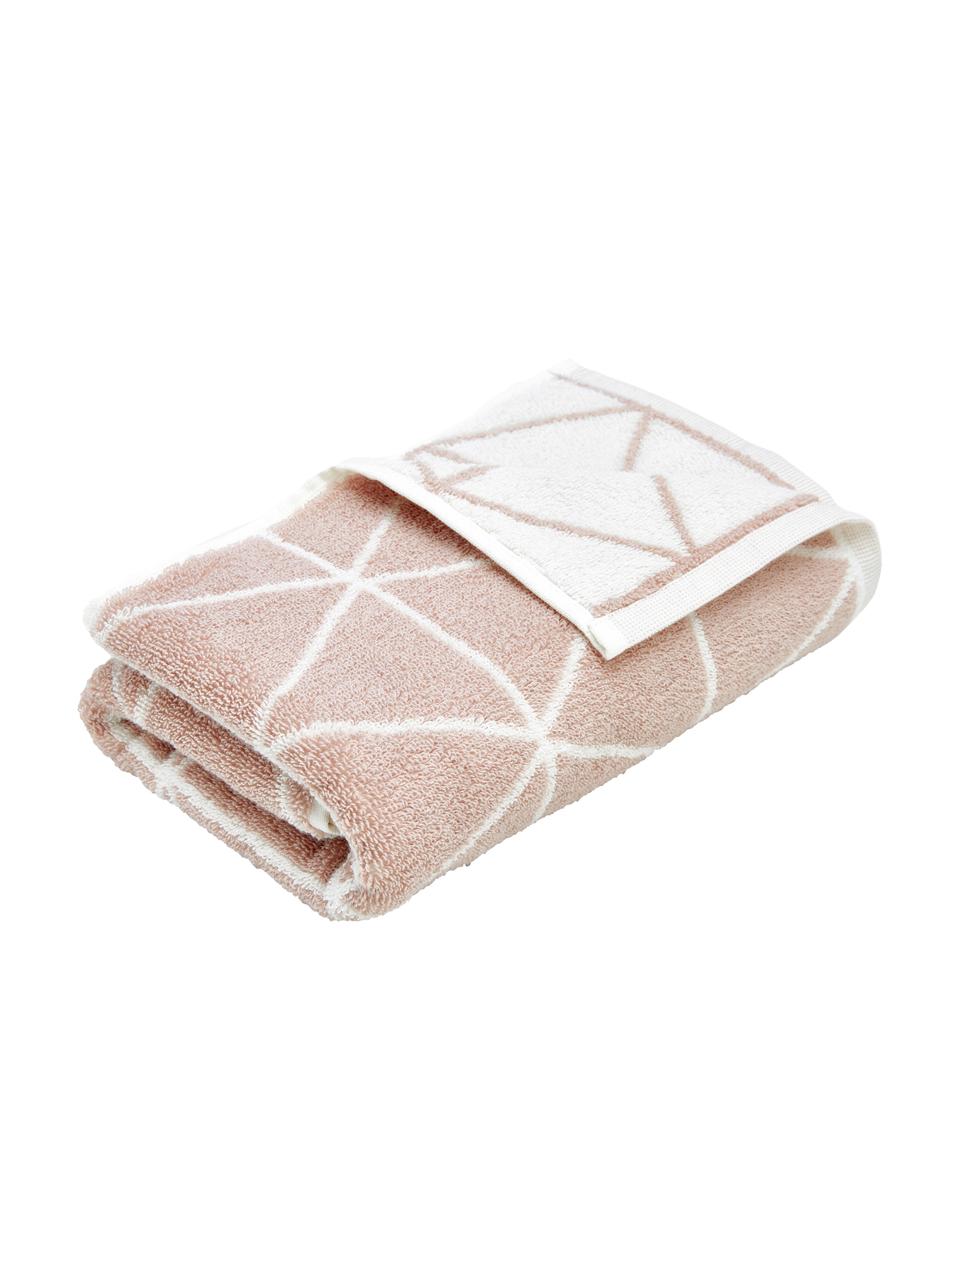 Dubbelzijdige handdoek Elina met grafisch patroon, Roze, crèmewit, Handdoek, B 50 x L 100 cm, 2 stuks